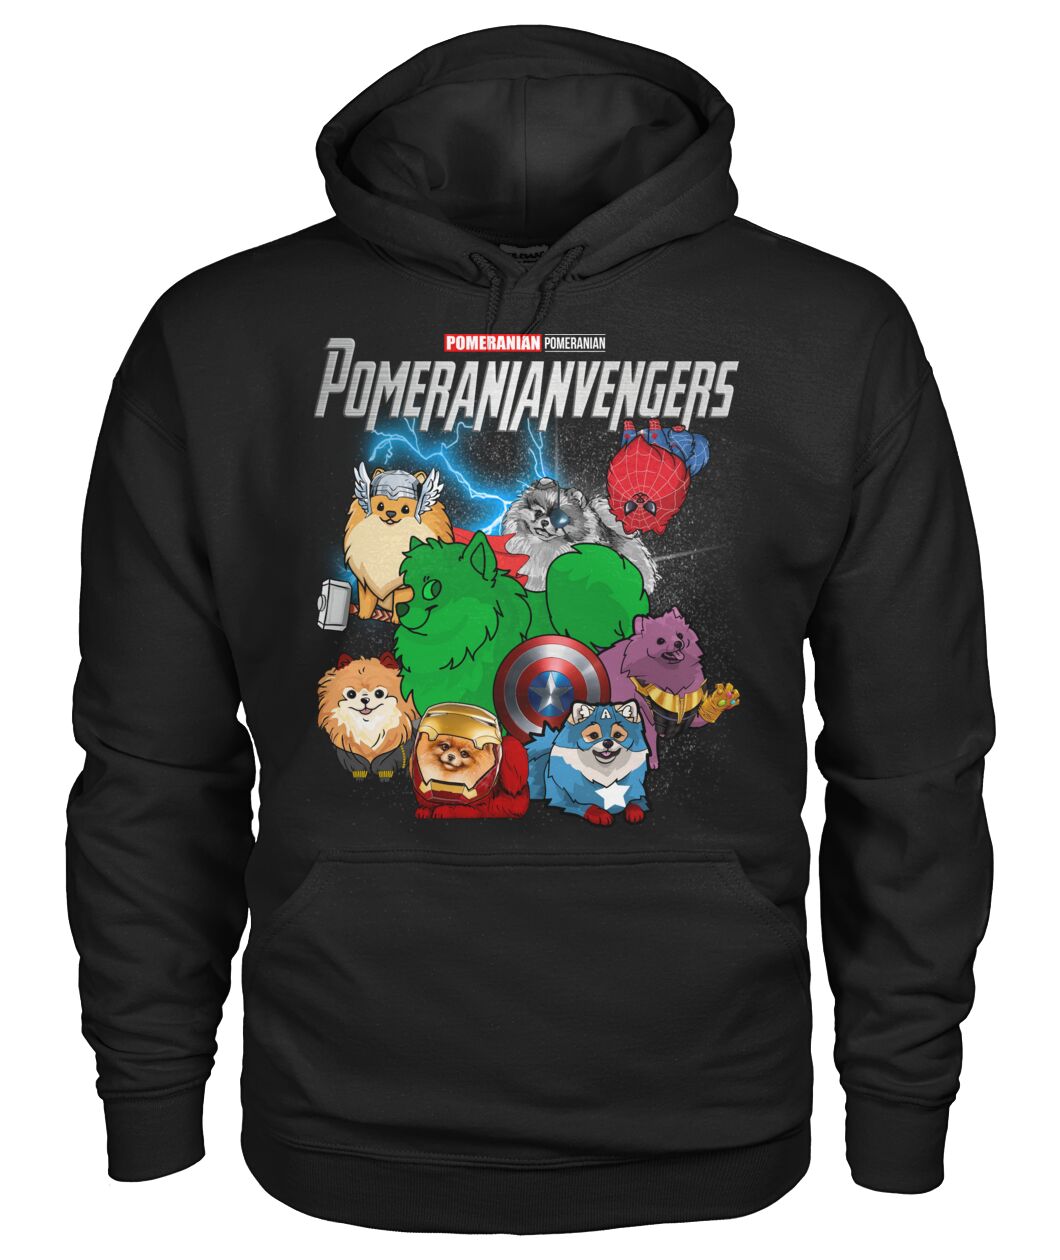 Pomeranianvengers 3D Hoodie, Shirt 9